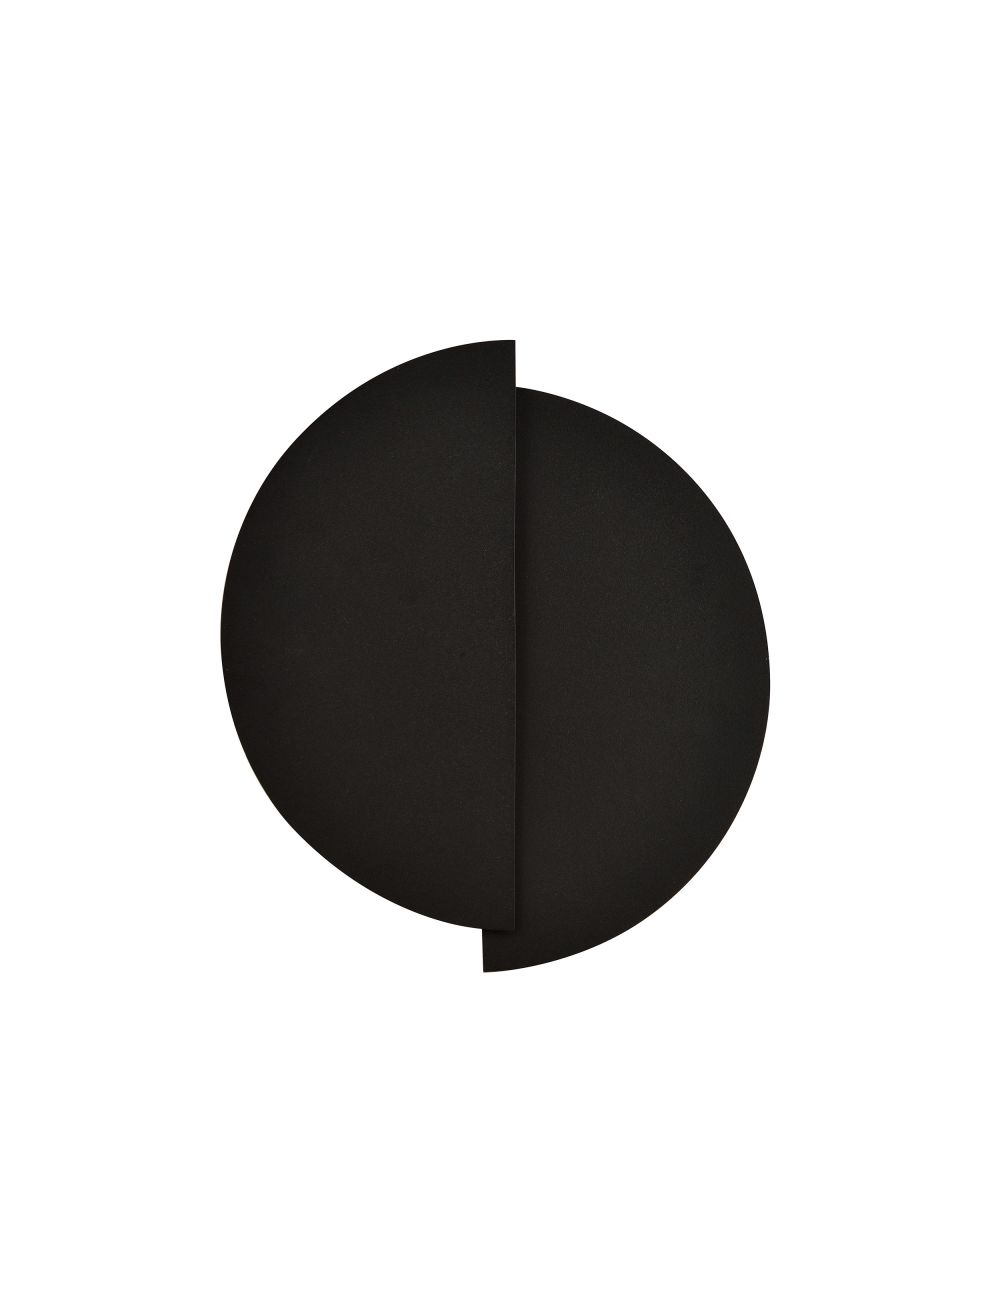 FORM 9 BLACK 1166/9 nowoczesny kinkiet LED czarny DESIGN EMIBIG